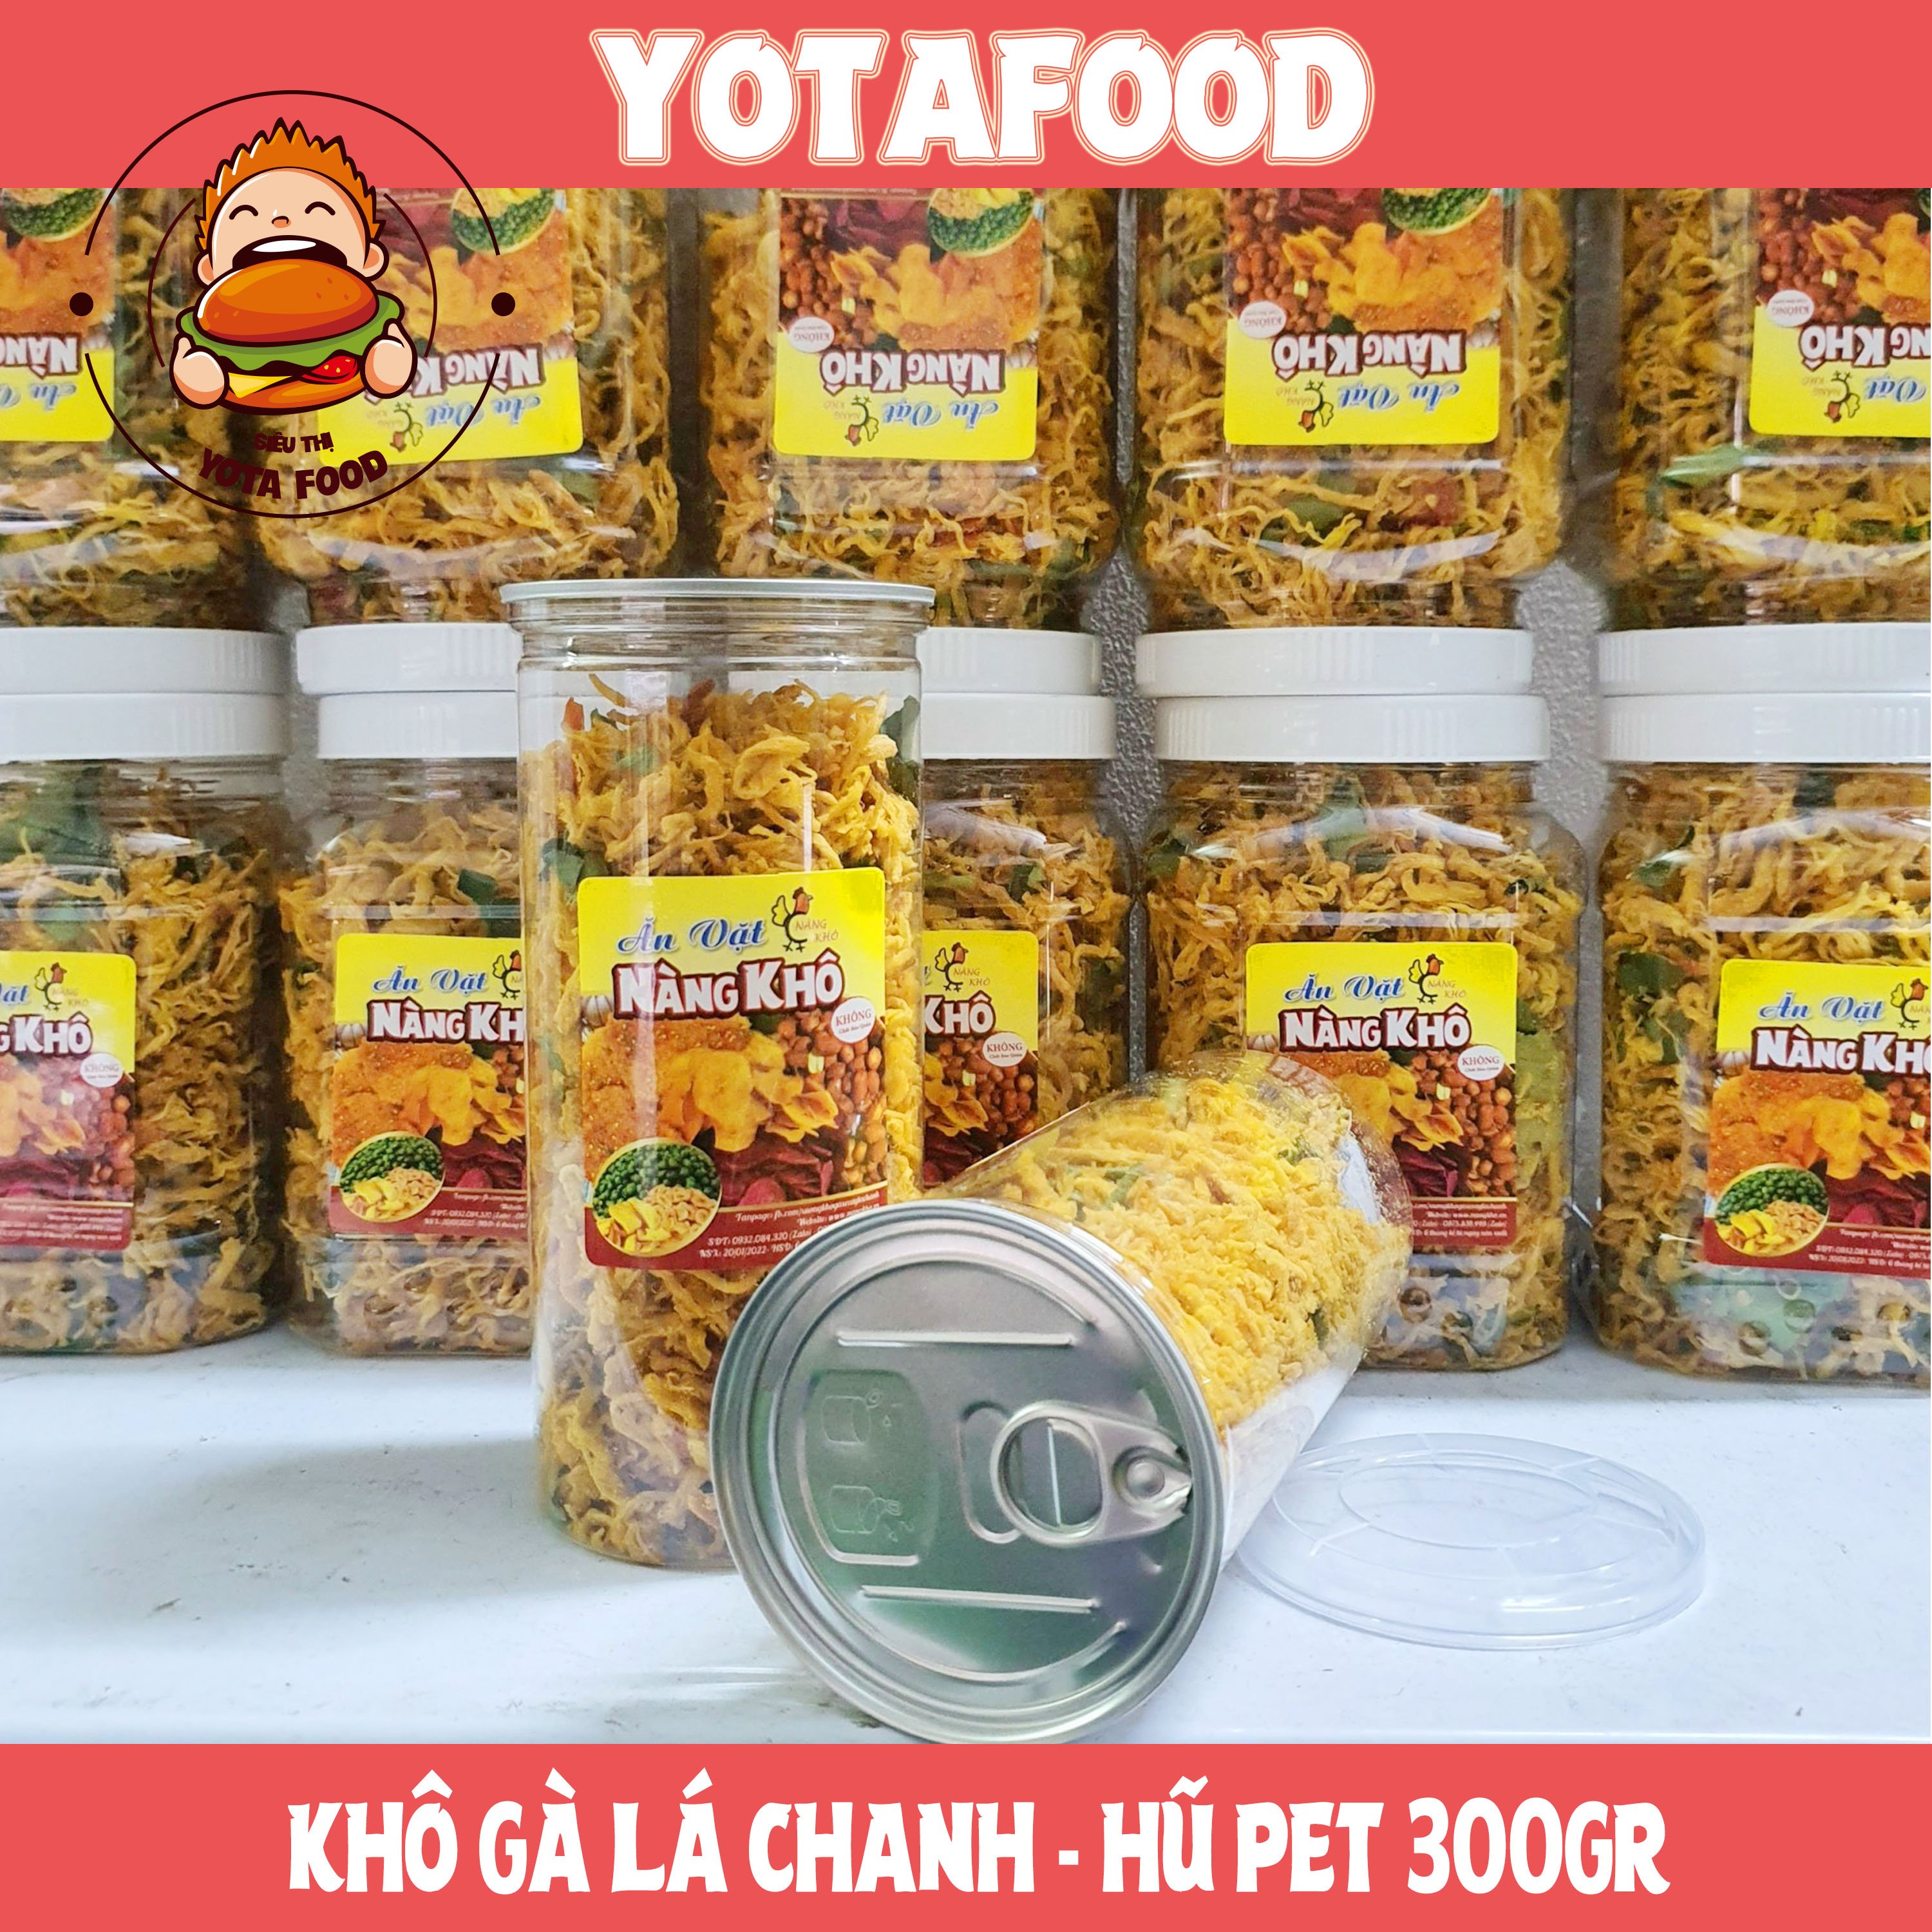 Khô gà lá chanh xé cay Yotafood 300g đồ ăn vặt vừa ngon vừa rẻ  Giòn ngon